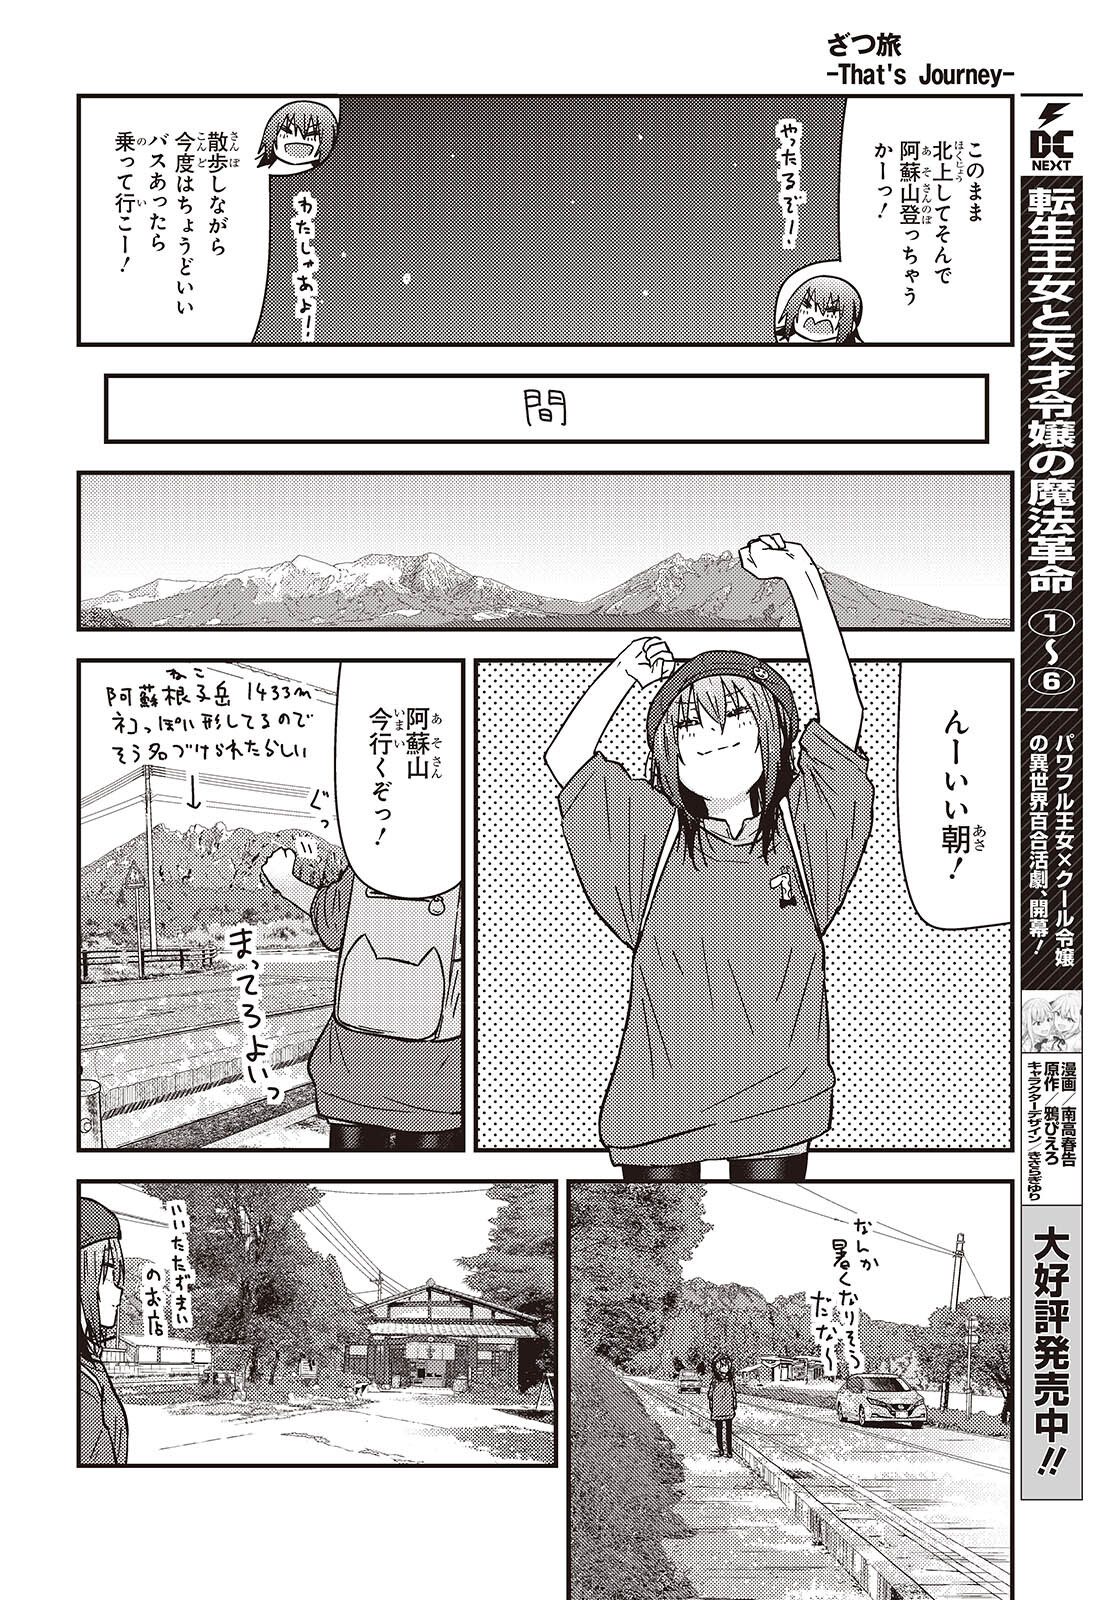 ざつ旅-That’s Journey- 第35話 - Page 16